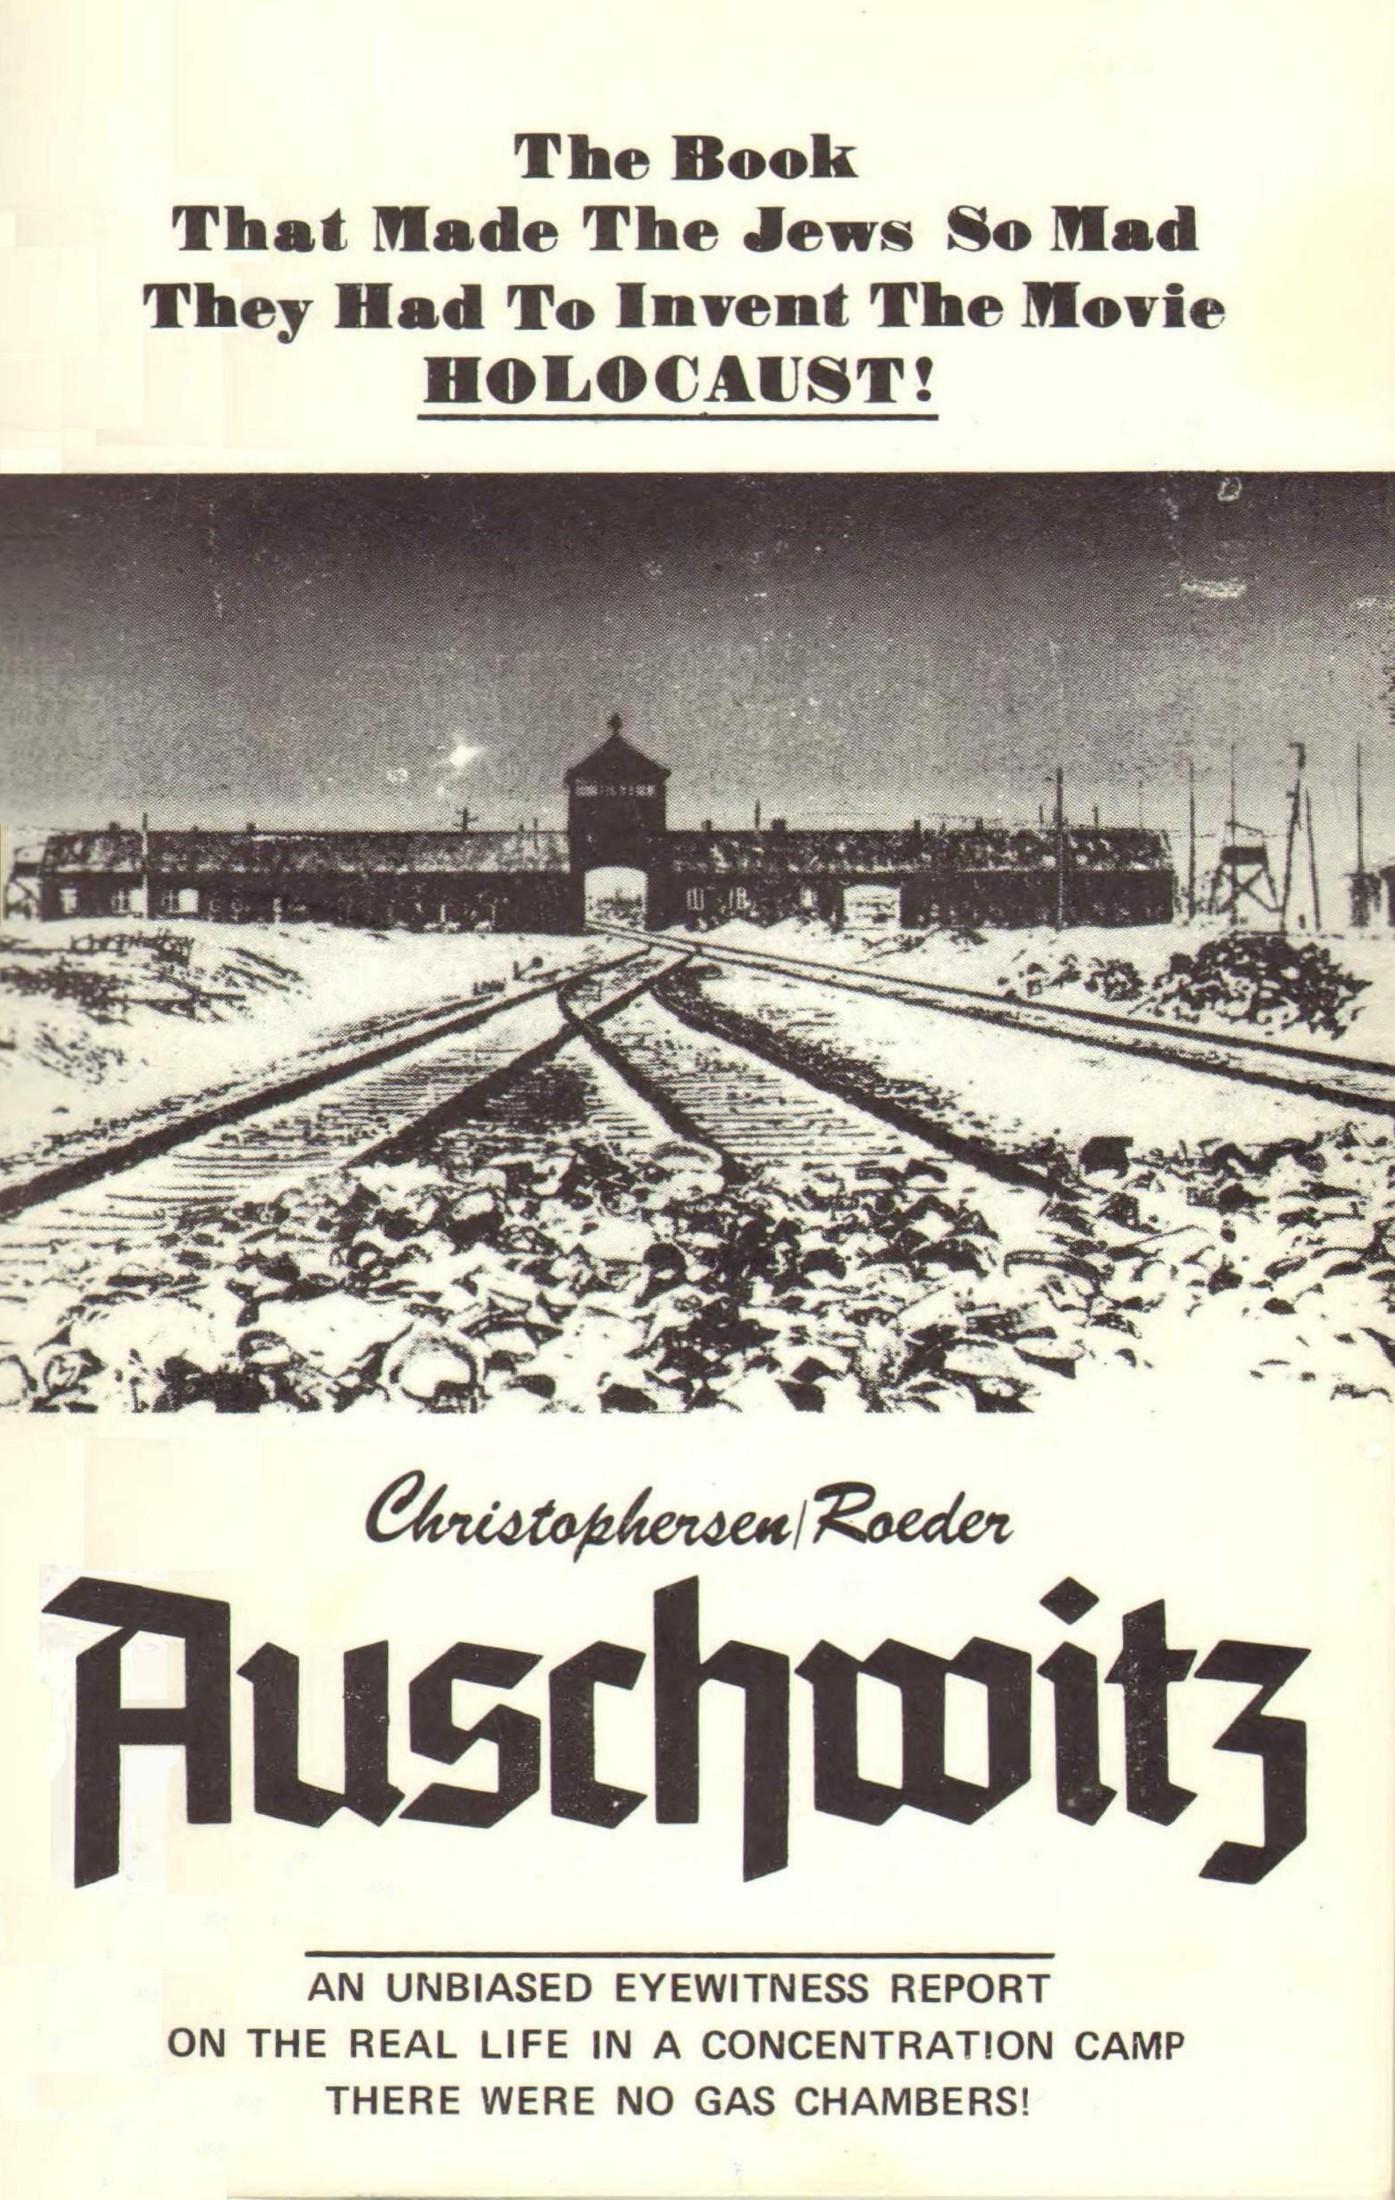 Auschwitz - An Unbiased Eyewitness Report (1979) by Thies Christophersen